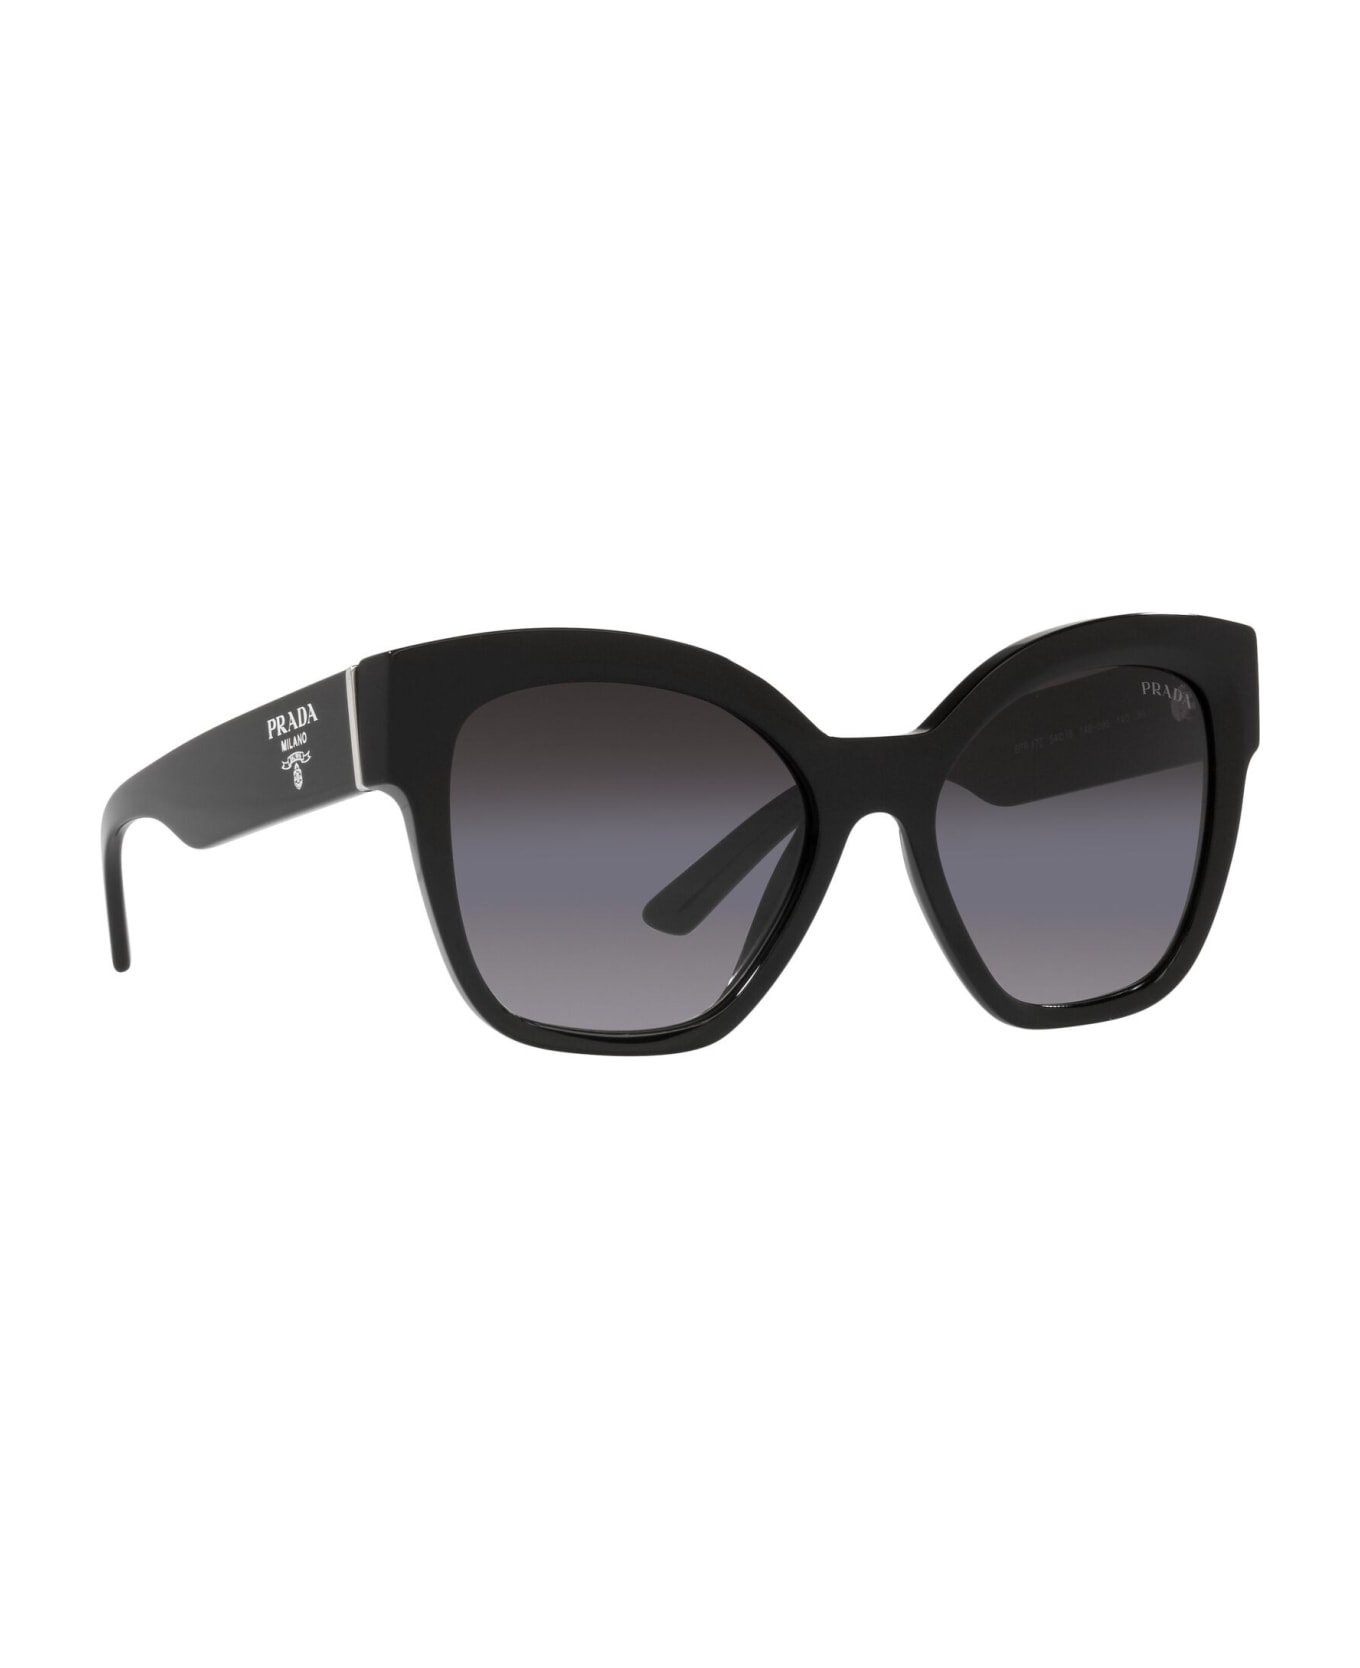 Prada Eyewear Eyewear - Nero/Nero